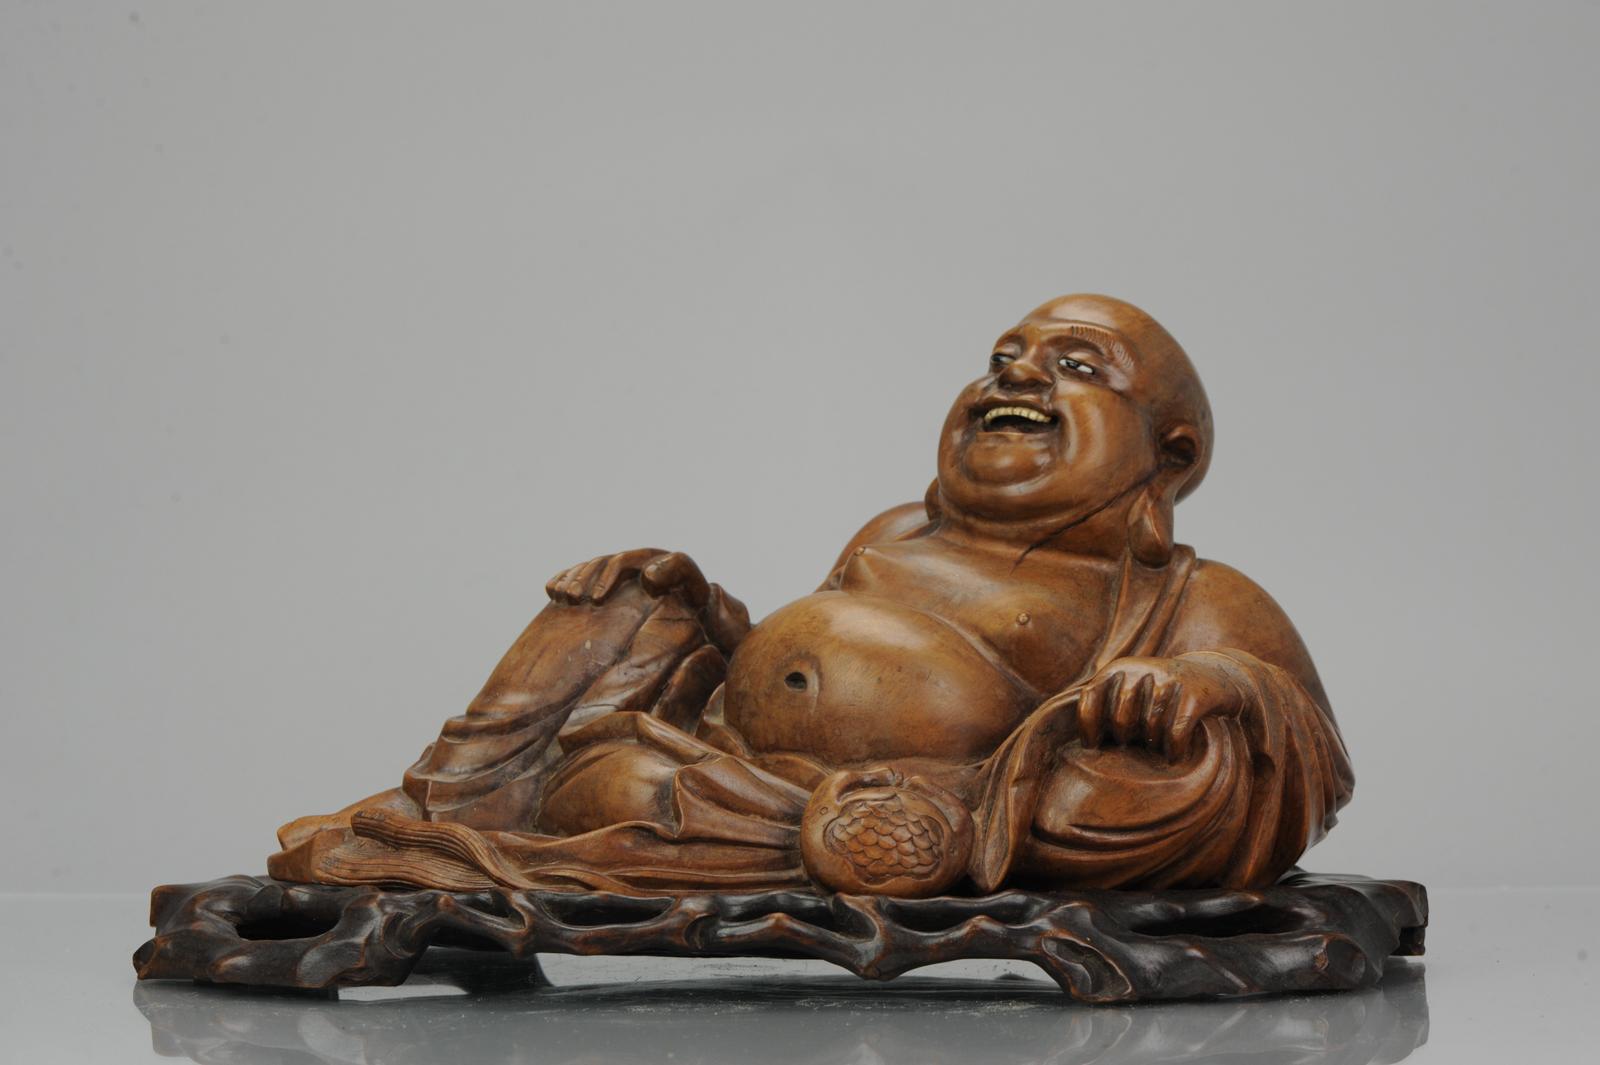 Description
Chine, Bouddha rieur en bois finement sculpté en position couchée. Assis sur un support assorti.

Condit
Quelques signes d'âge comme des craquelures et 2 ou 3 fritspots. Dimensions : 365 mm de diamètre, 200 mm de hauteur, 200 mm de